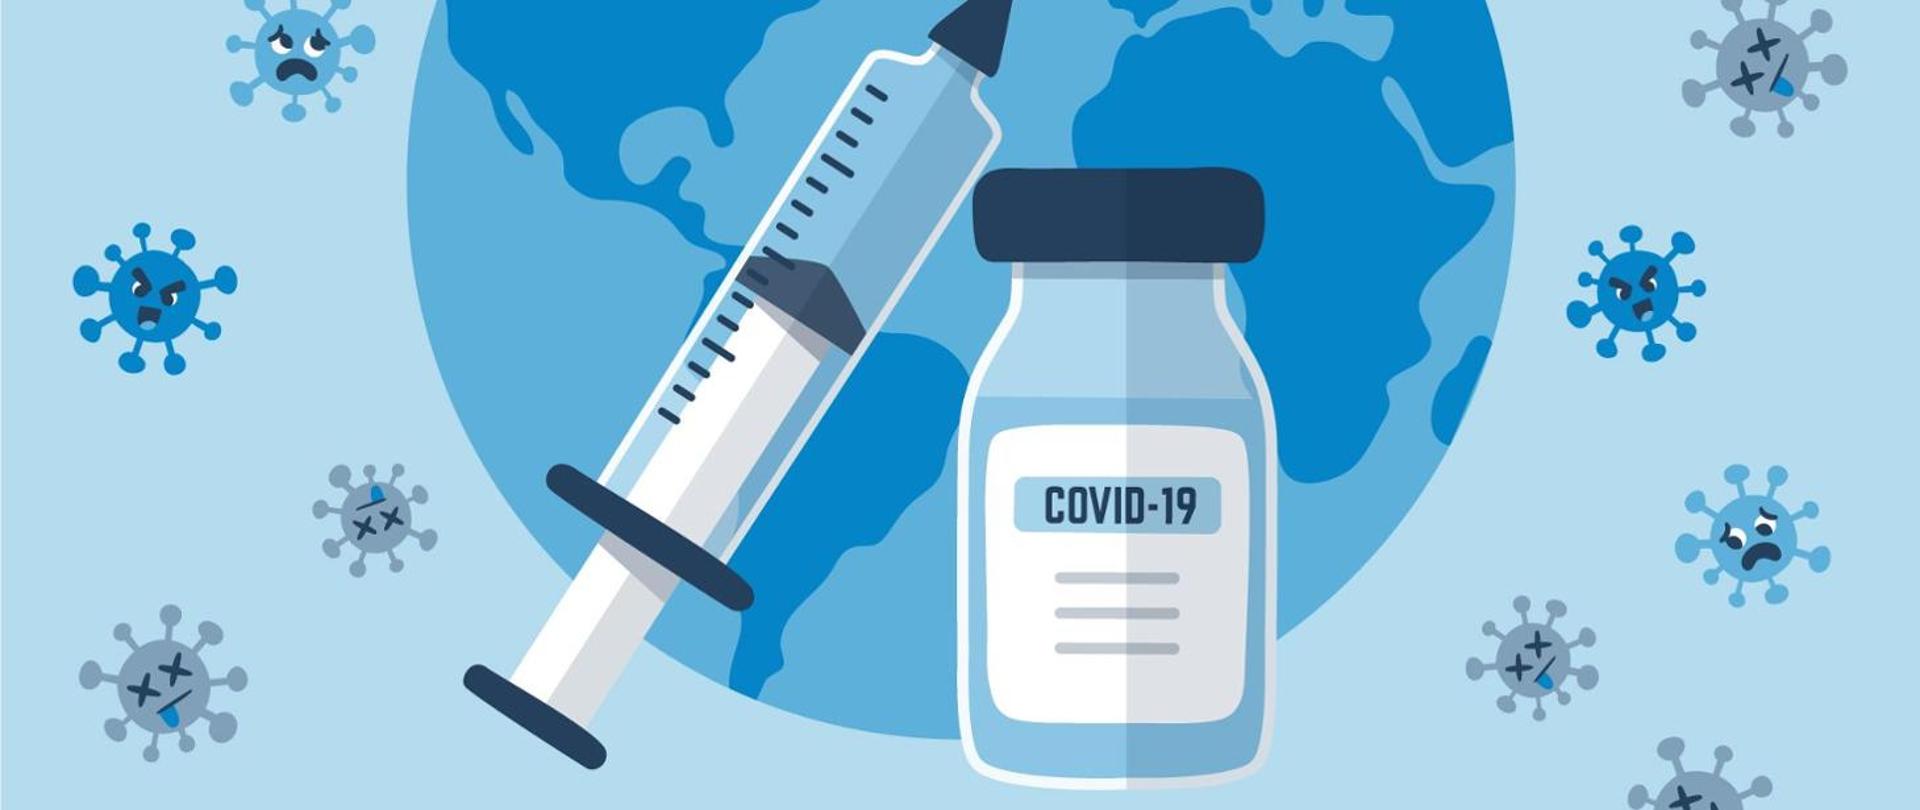 panorama z grafiką przedstawiającą fiolkę ze szczepionką przeciw COVID-19